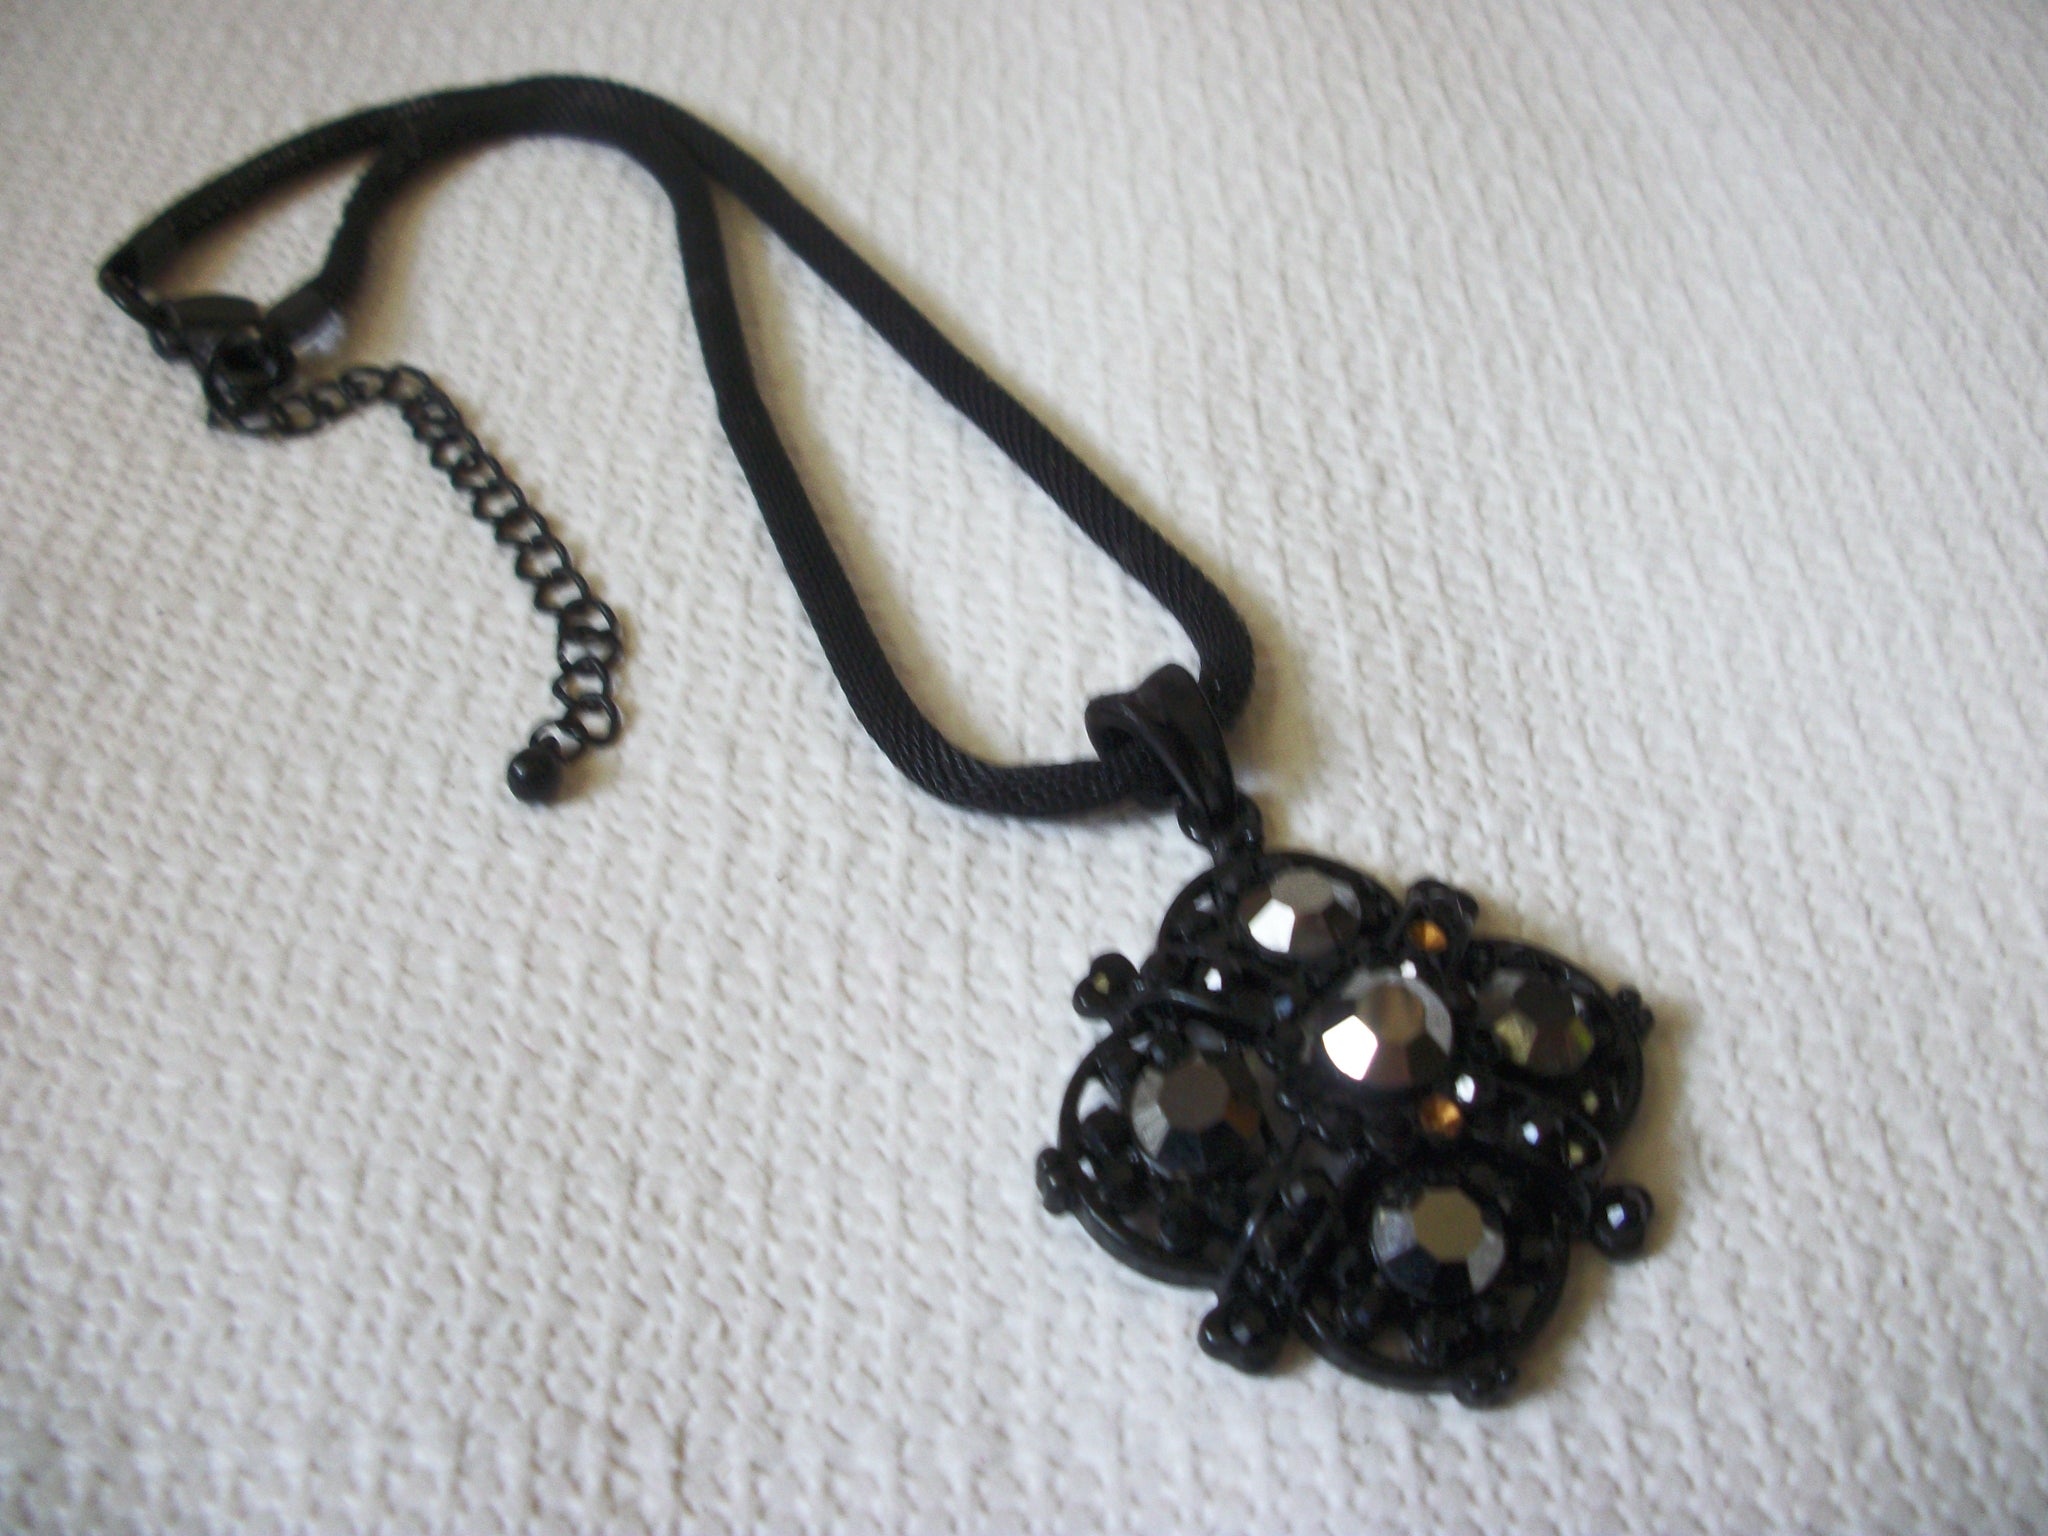 CYPRESS Black Rhinestones Necklace 43020